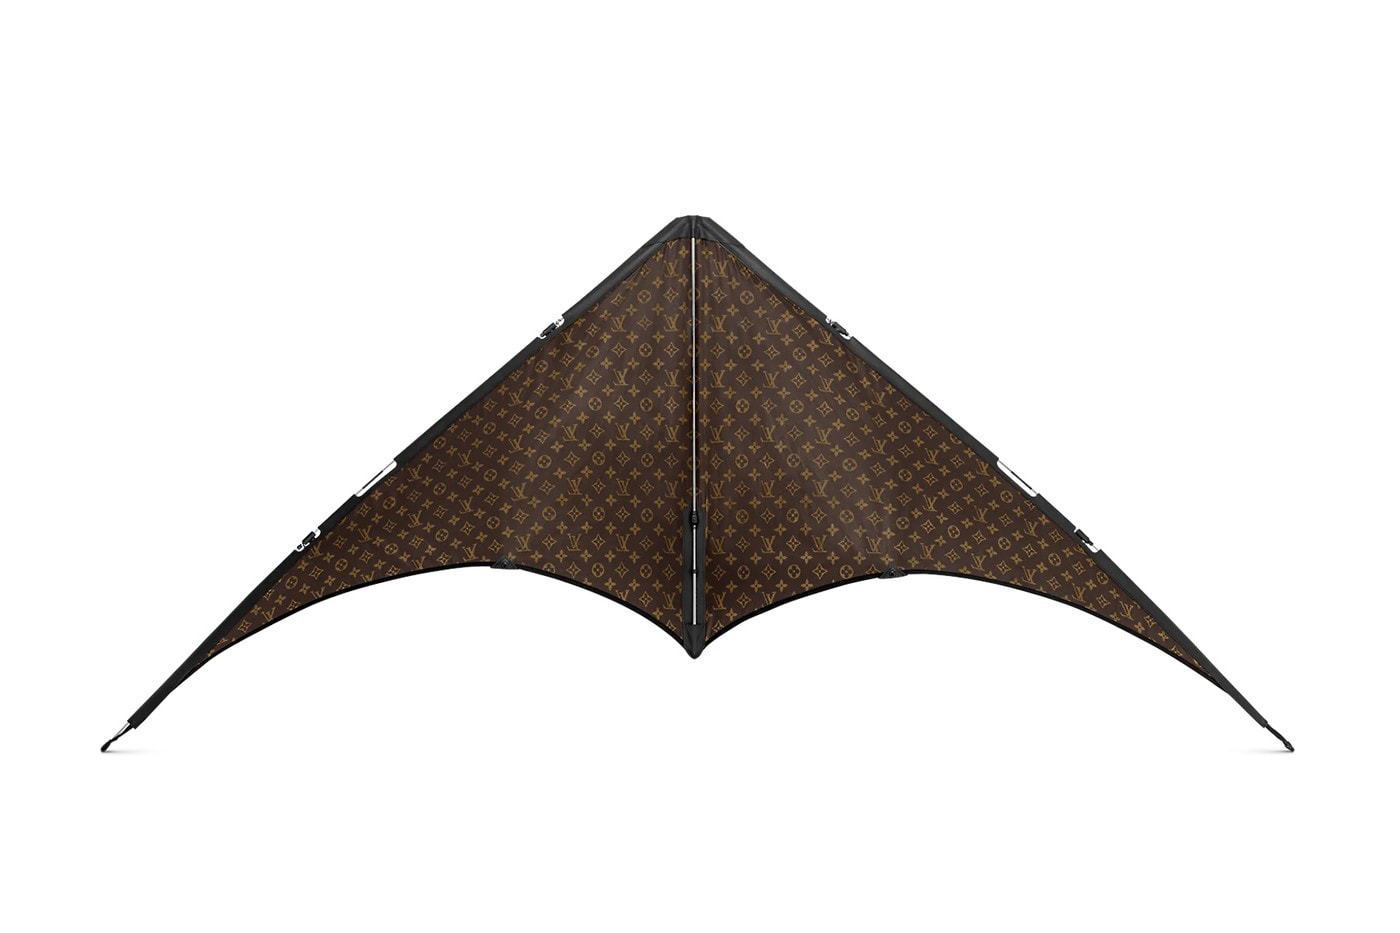 ルイ・ヴィトンより100万円超えの凧が登場 Louis Vuitton Offers $10,400 USD Monogram Kite